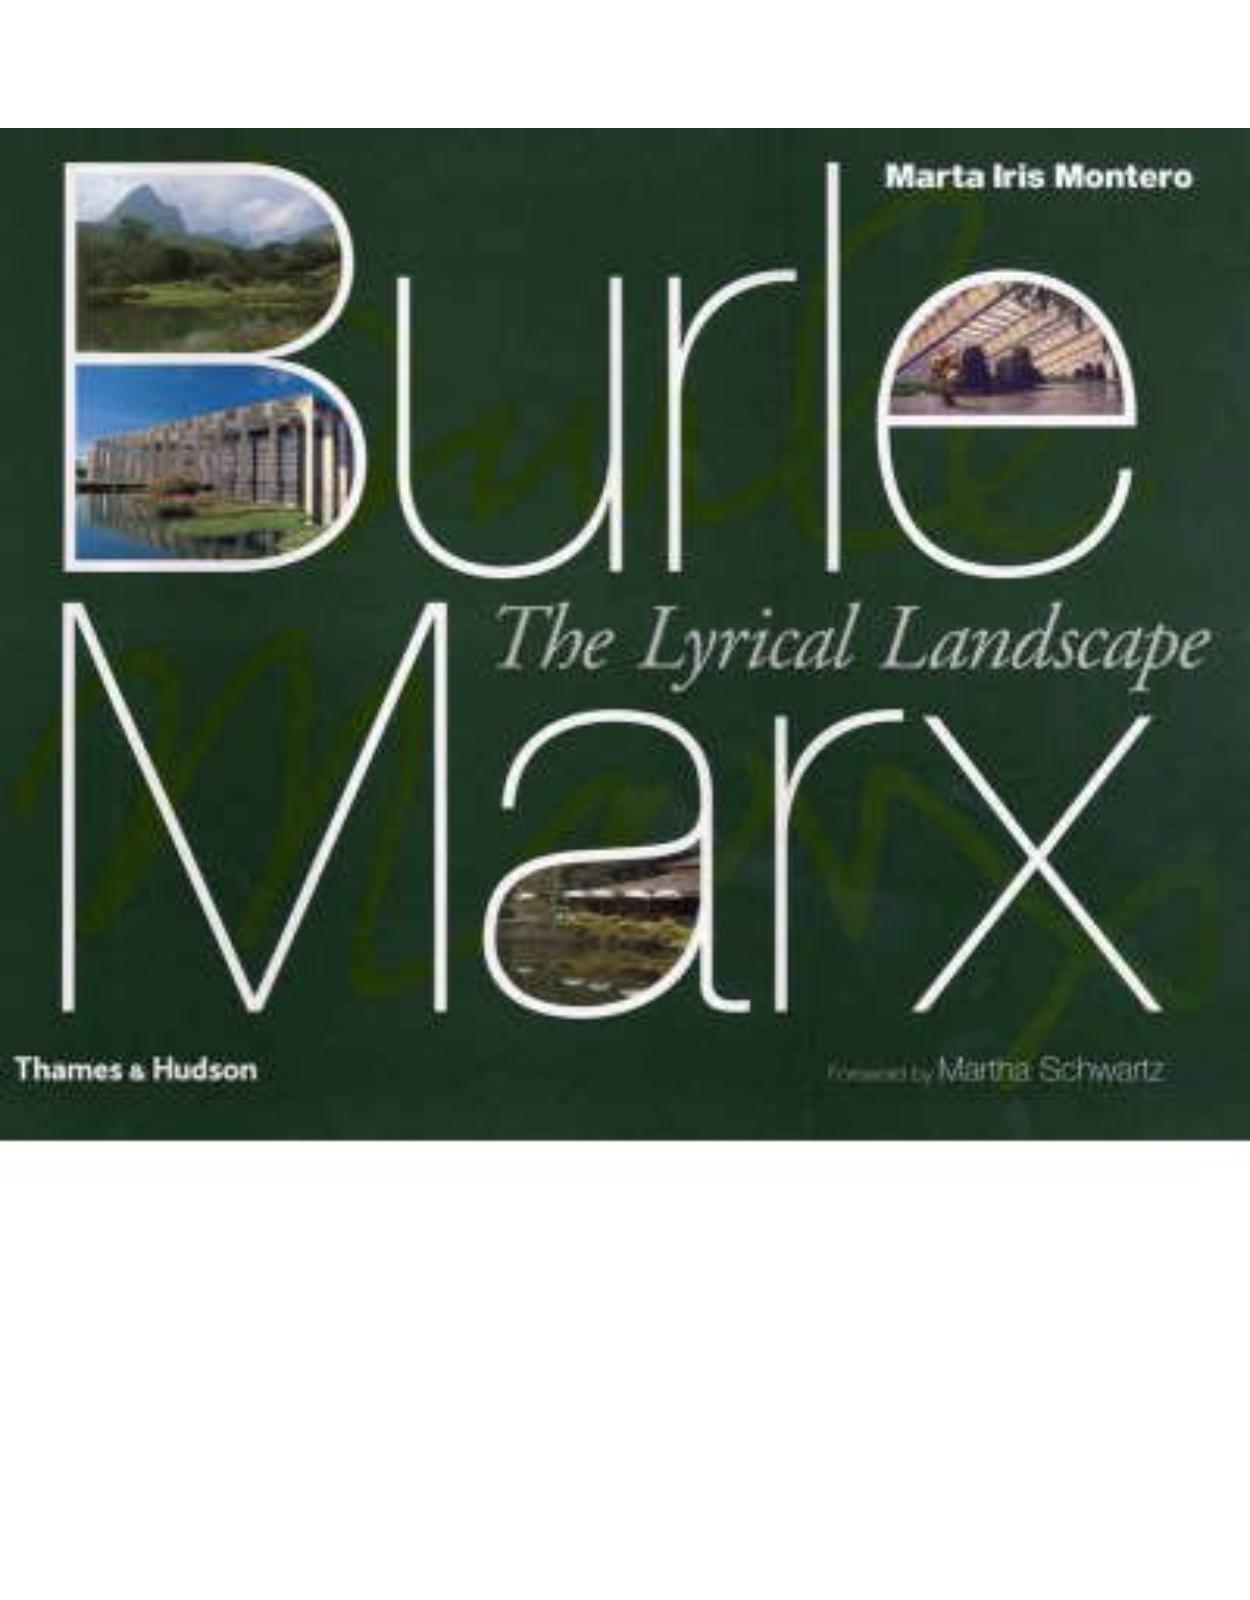 Burle Marx: The Lyrical Landscape